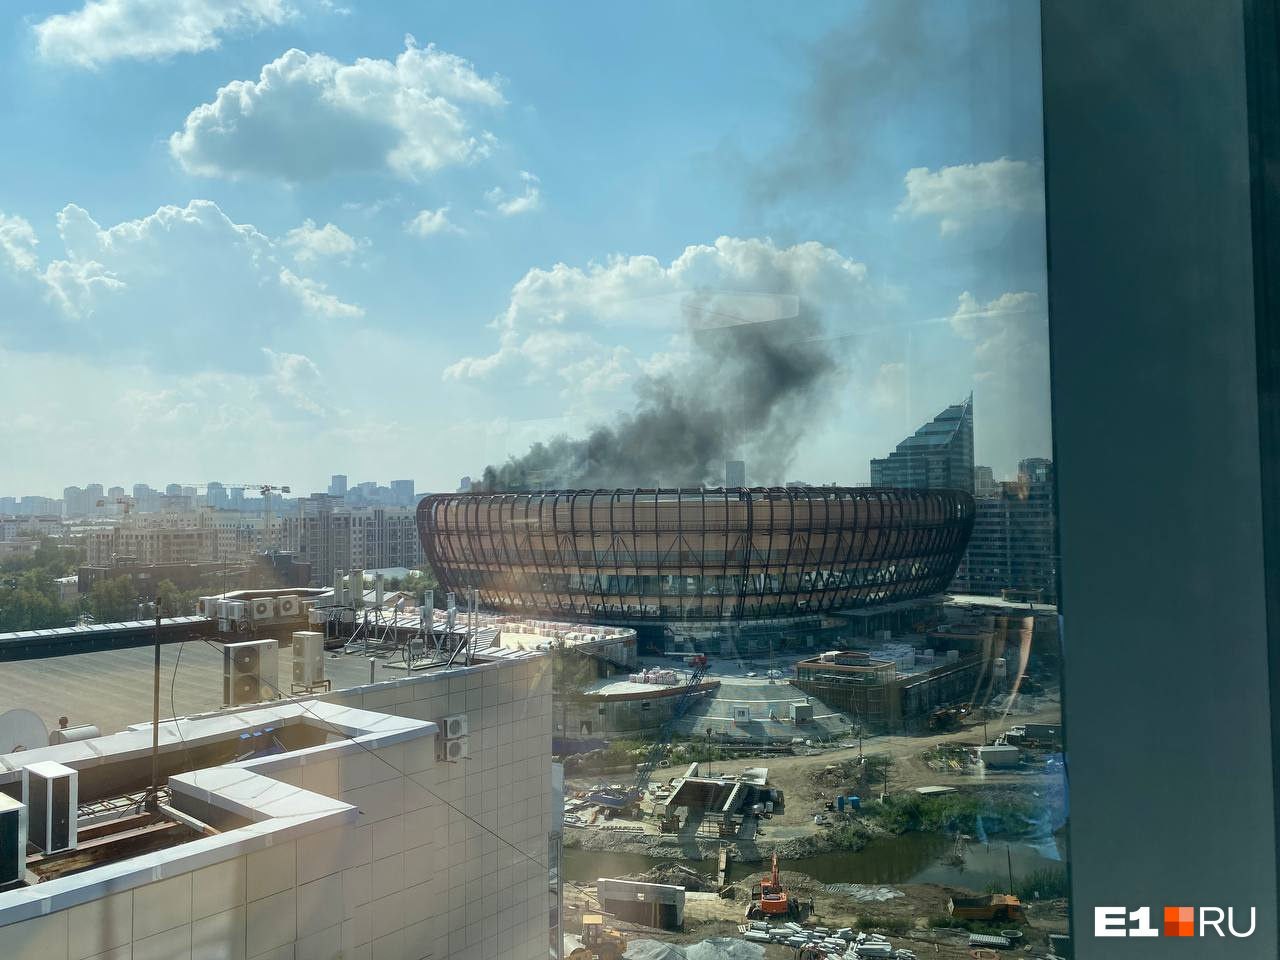 С ледовой арены УГМК валит черный дым. Его видно со всех концов города